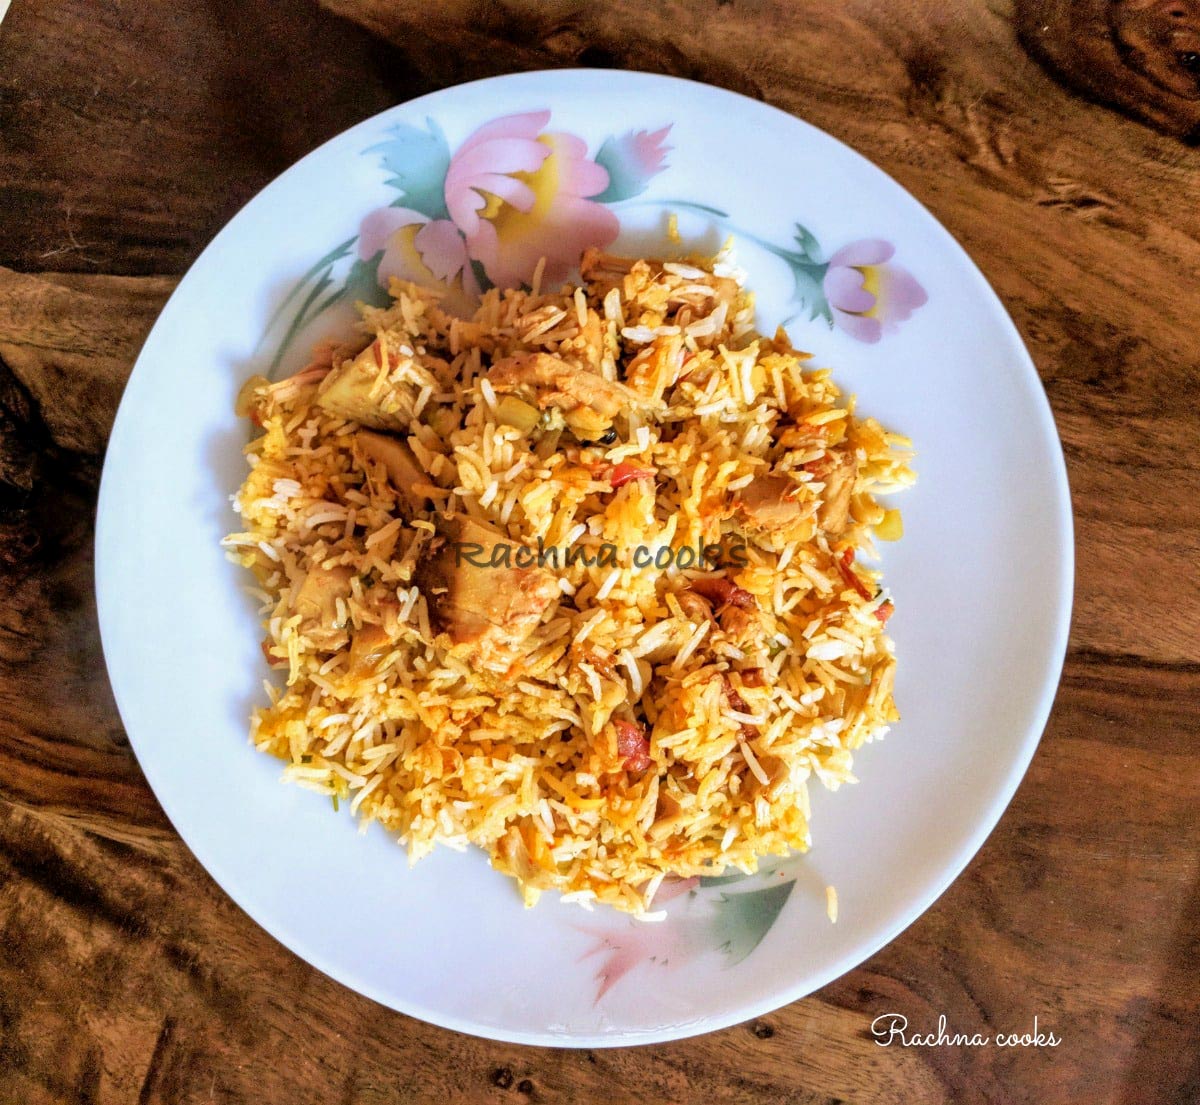 kathal ka pulav served on a plate